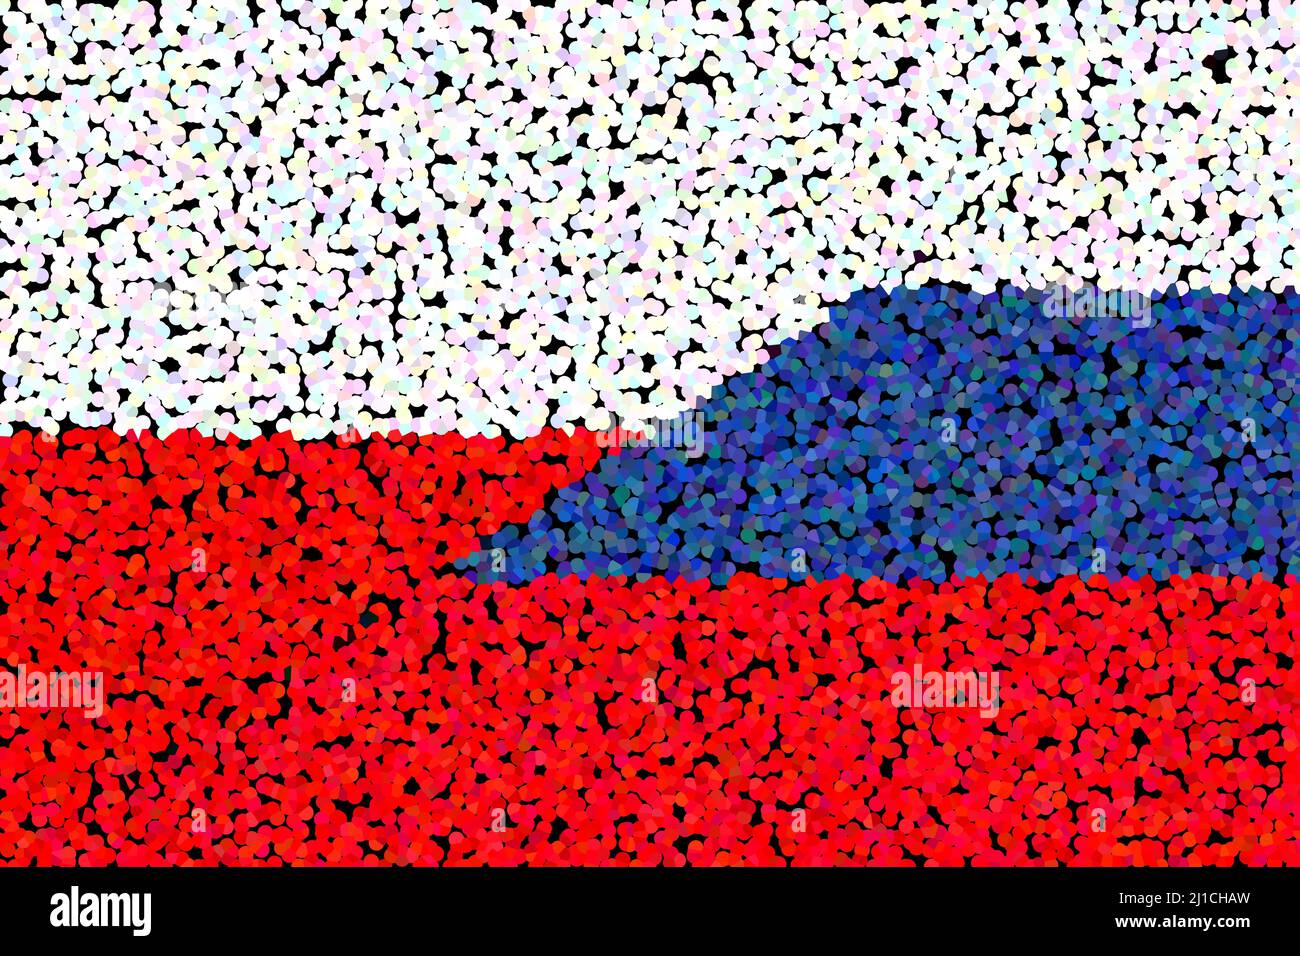 Polen Russland. Flagge Polens und Flagge Russlands. Konzept der Hilfe, der Vereinigung von Ländern, der politischen und wirtschaftlichen Beziehungen. Horizontales Design. Zusammenfassung Stockfoto